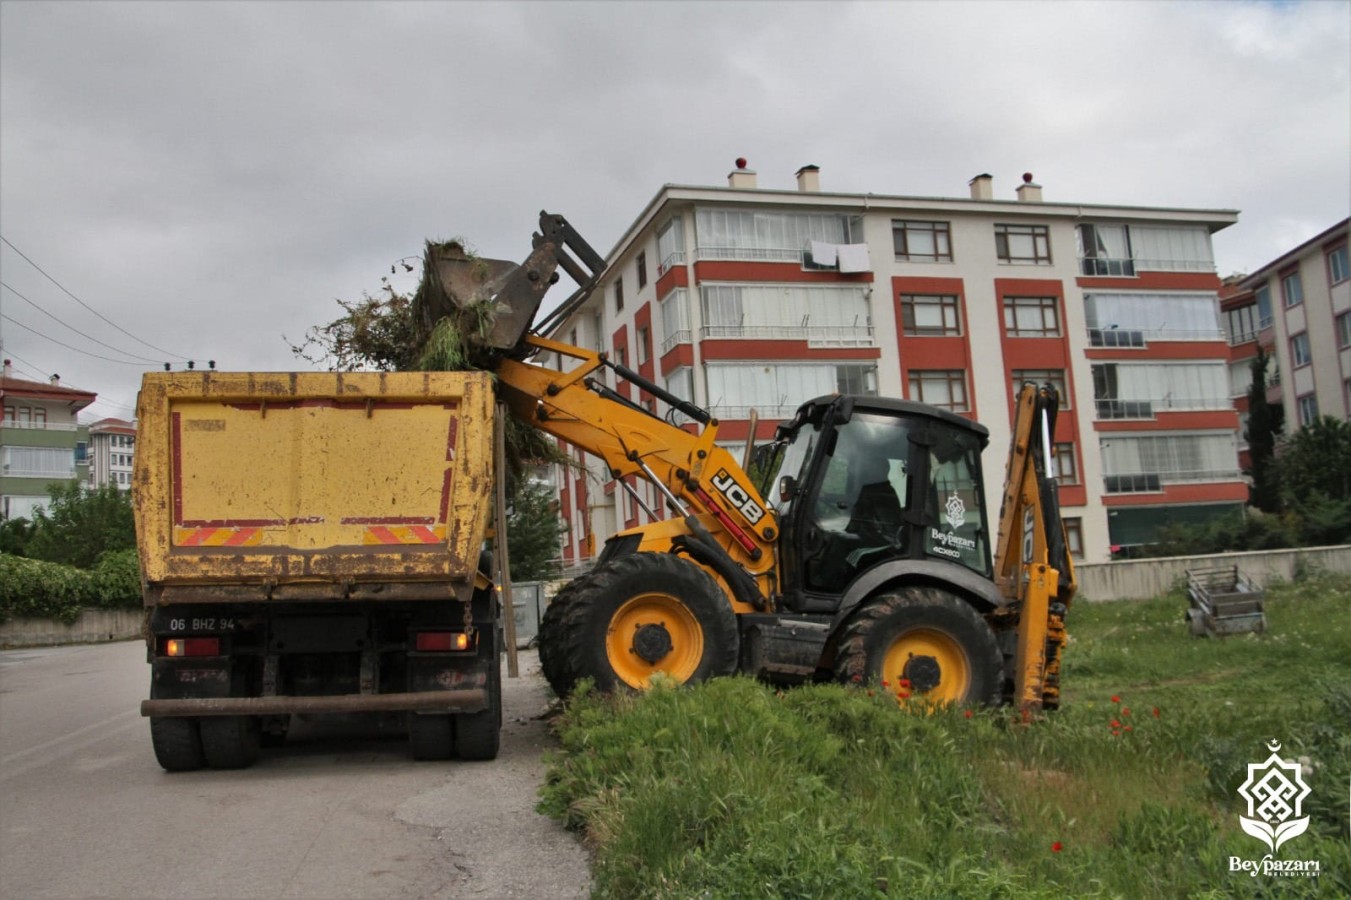 Beypazarı Belediyesi Temizlik İşleri Müdürlüğü ekiplerimiz